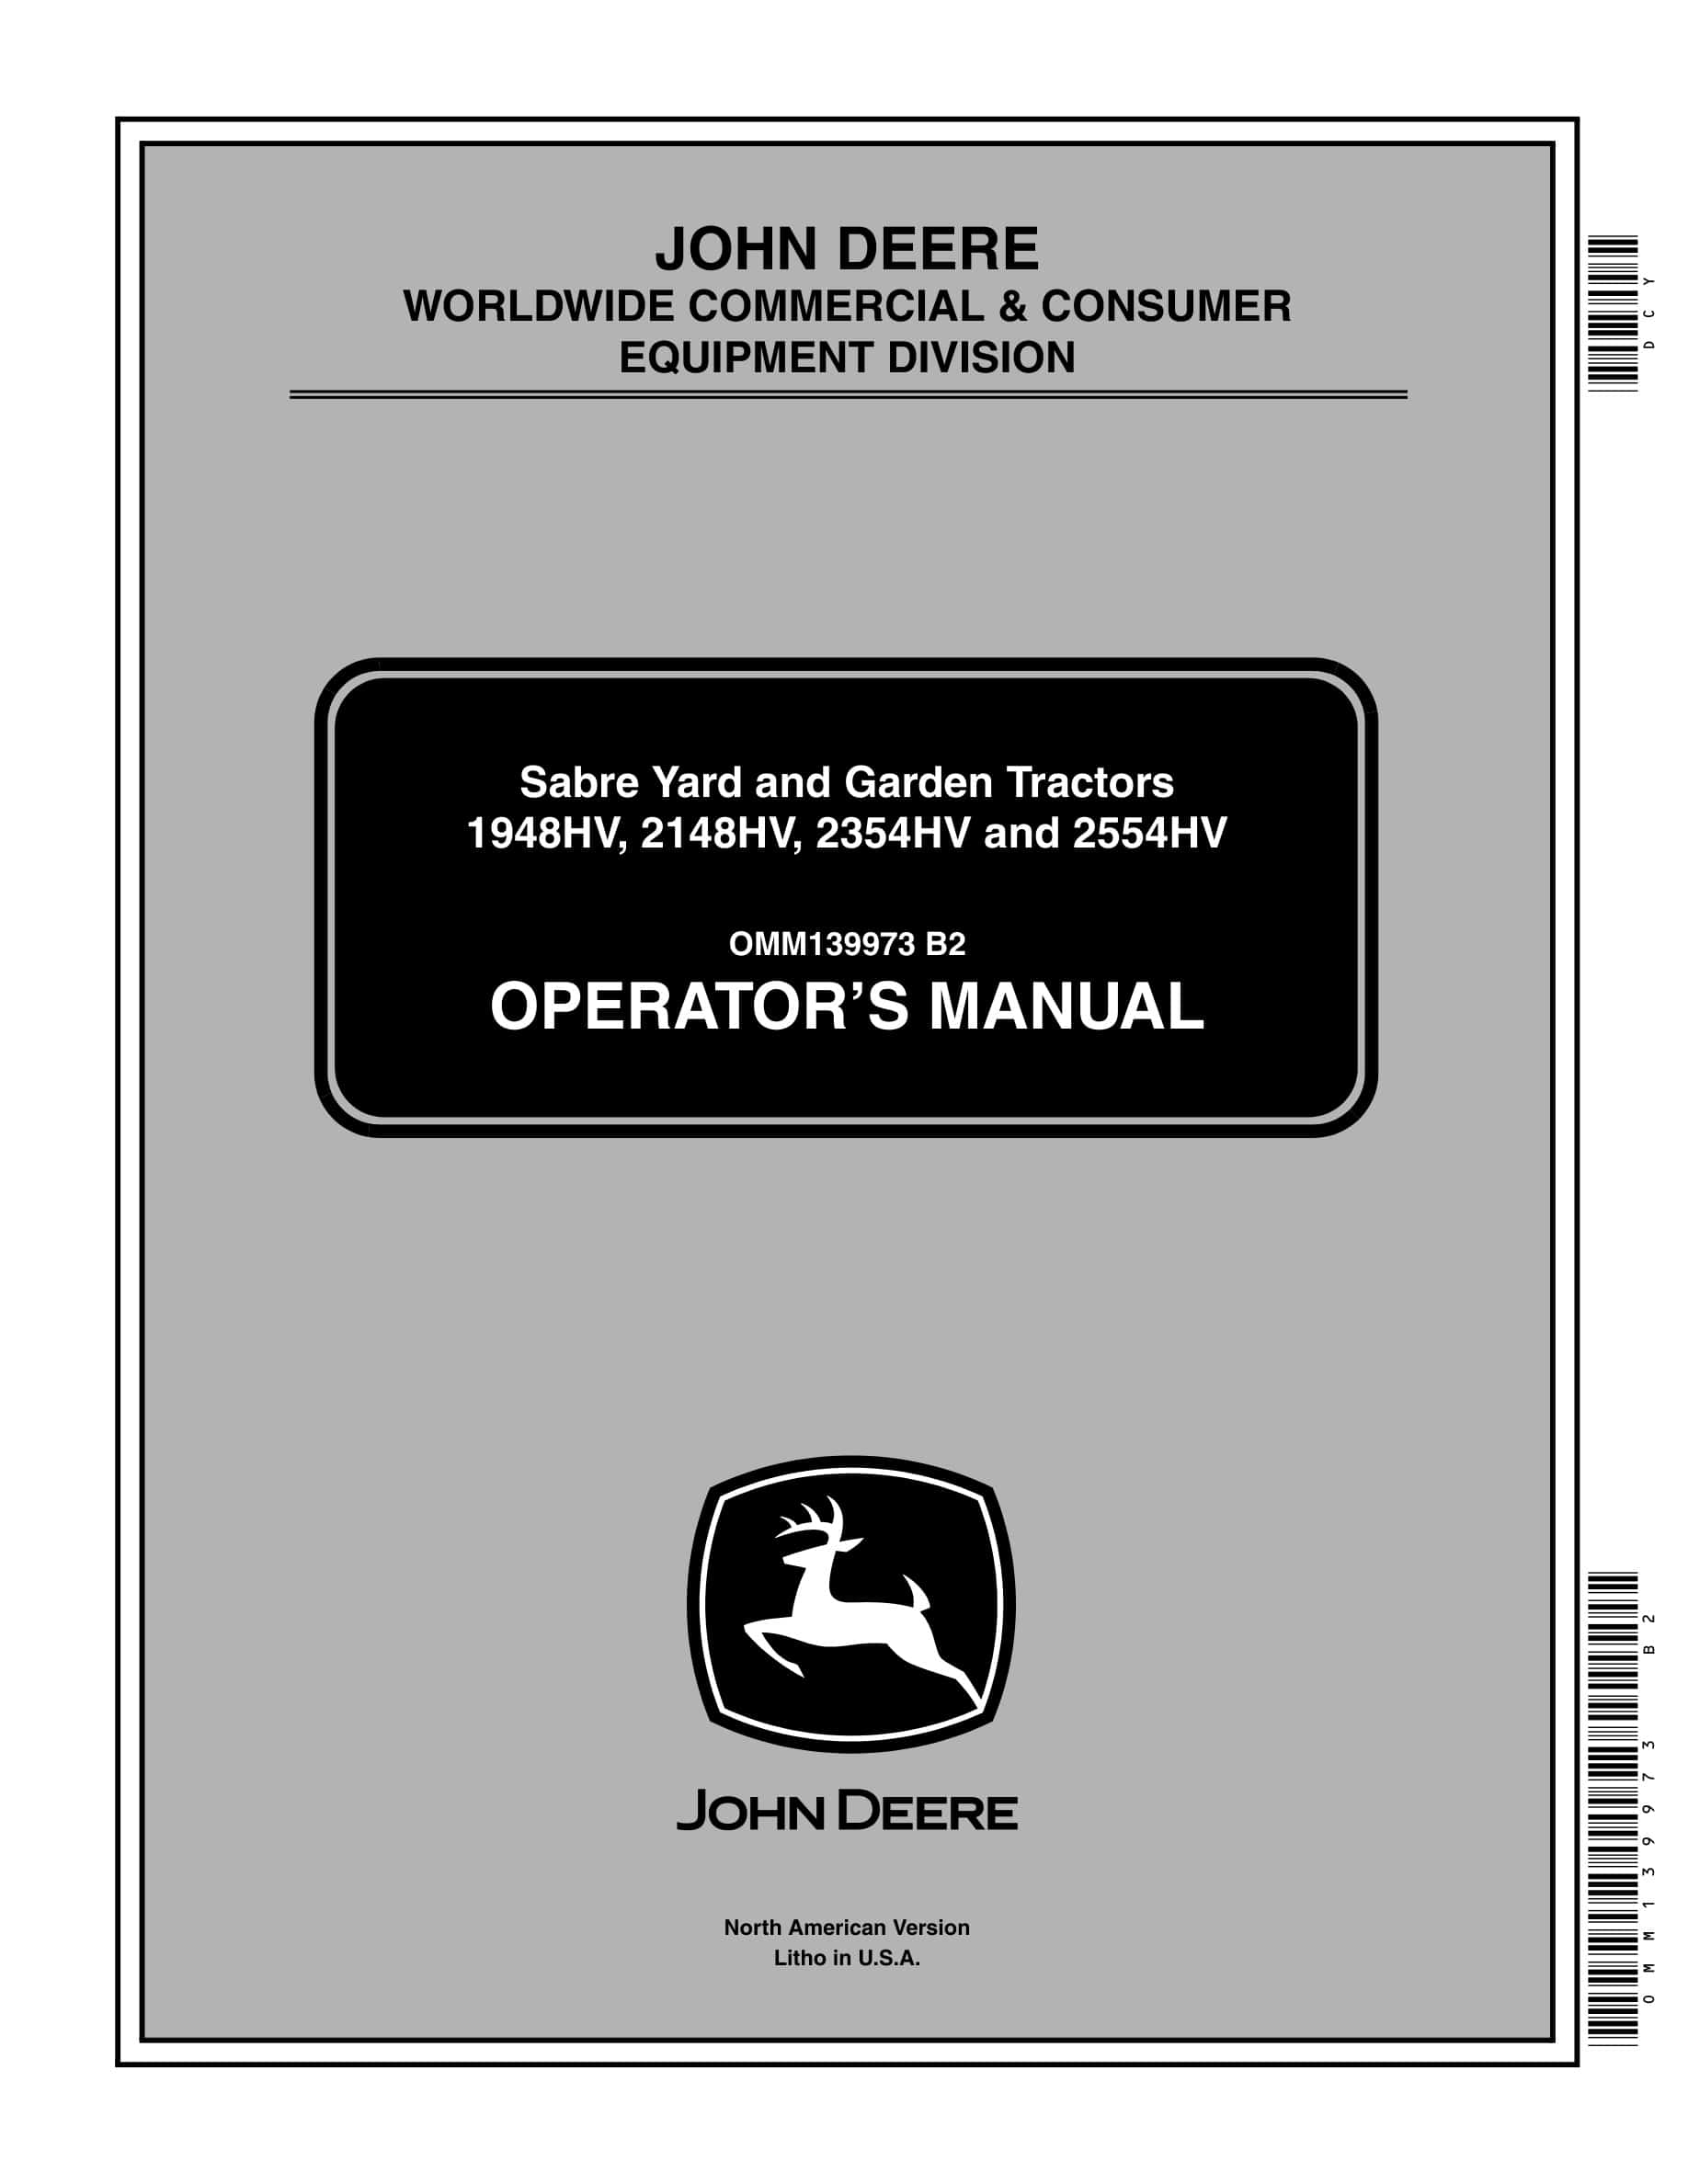 John Deere 1948HV, 2148HV, 2354HV and 2554HV Tractor Operator Manual OMM139973-1